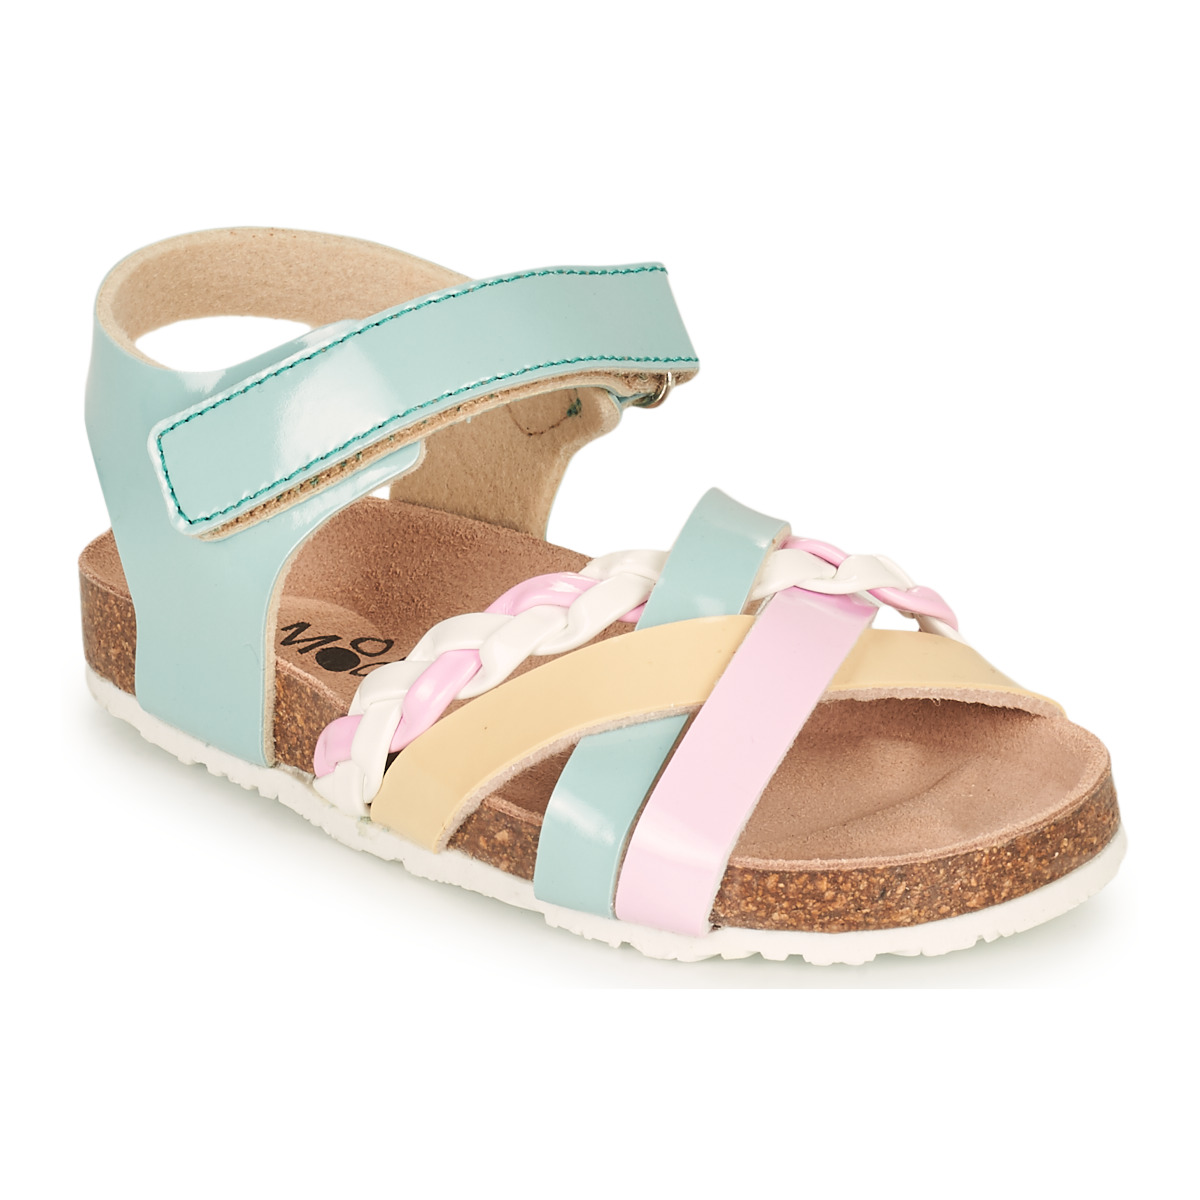 Schoenen Meisjes Sandalen / Open schoenen Mod'8 KOENIA Blauw / Roze